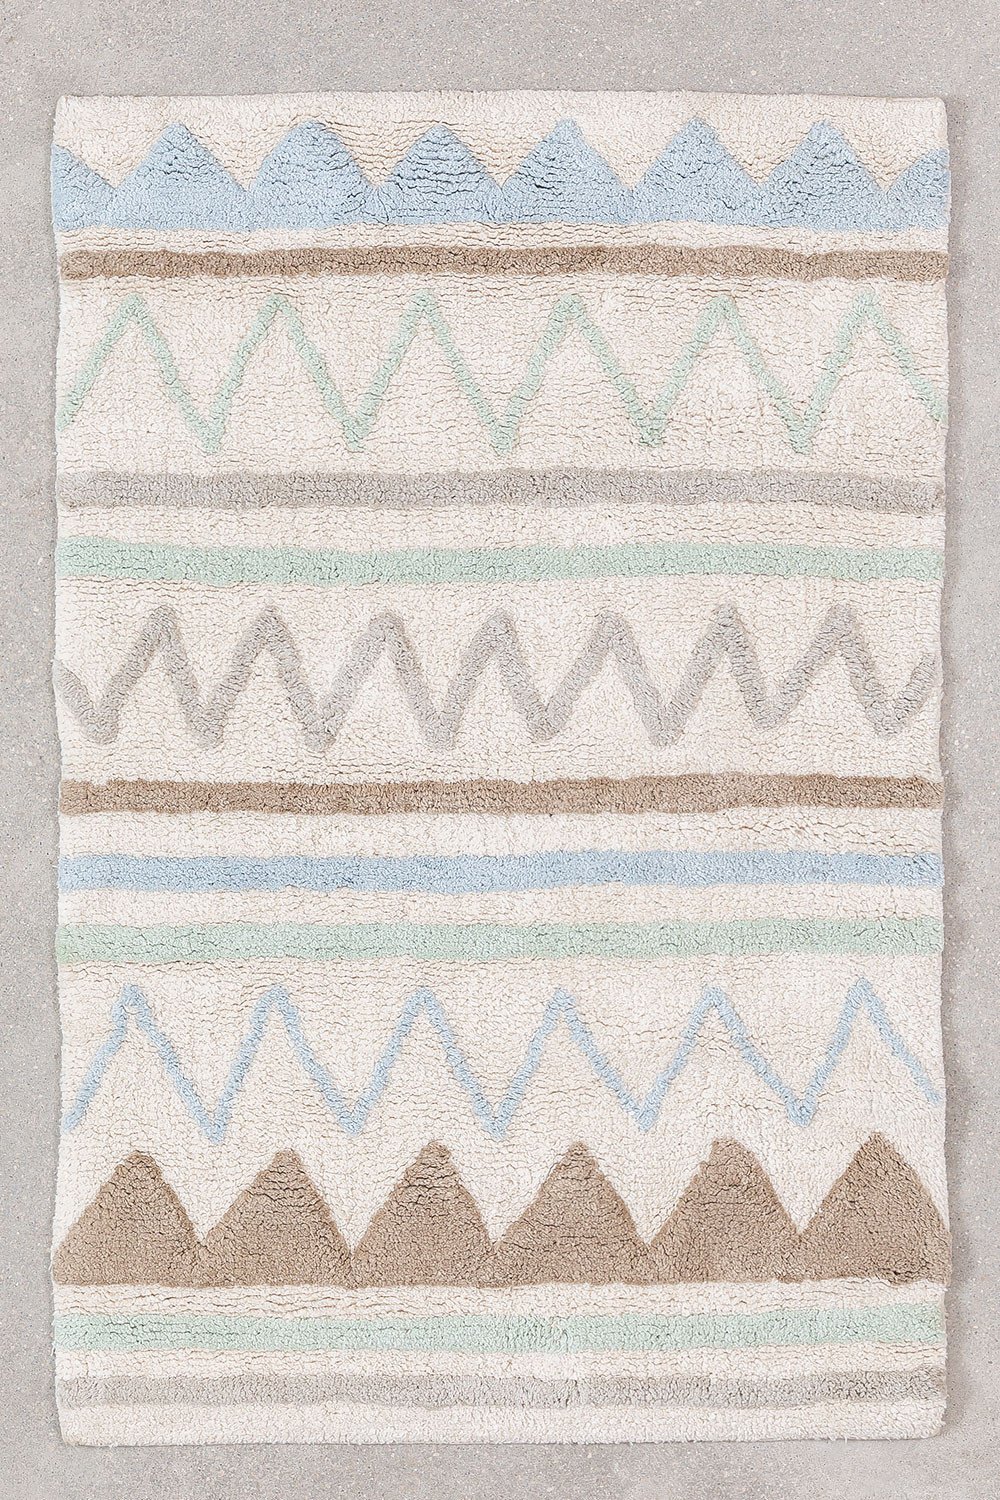 Katoenen vloerkleed (60X95 cm) Miko KIDS, galerij beeld 1